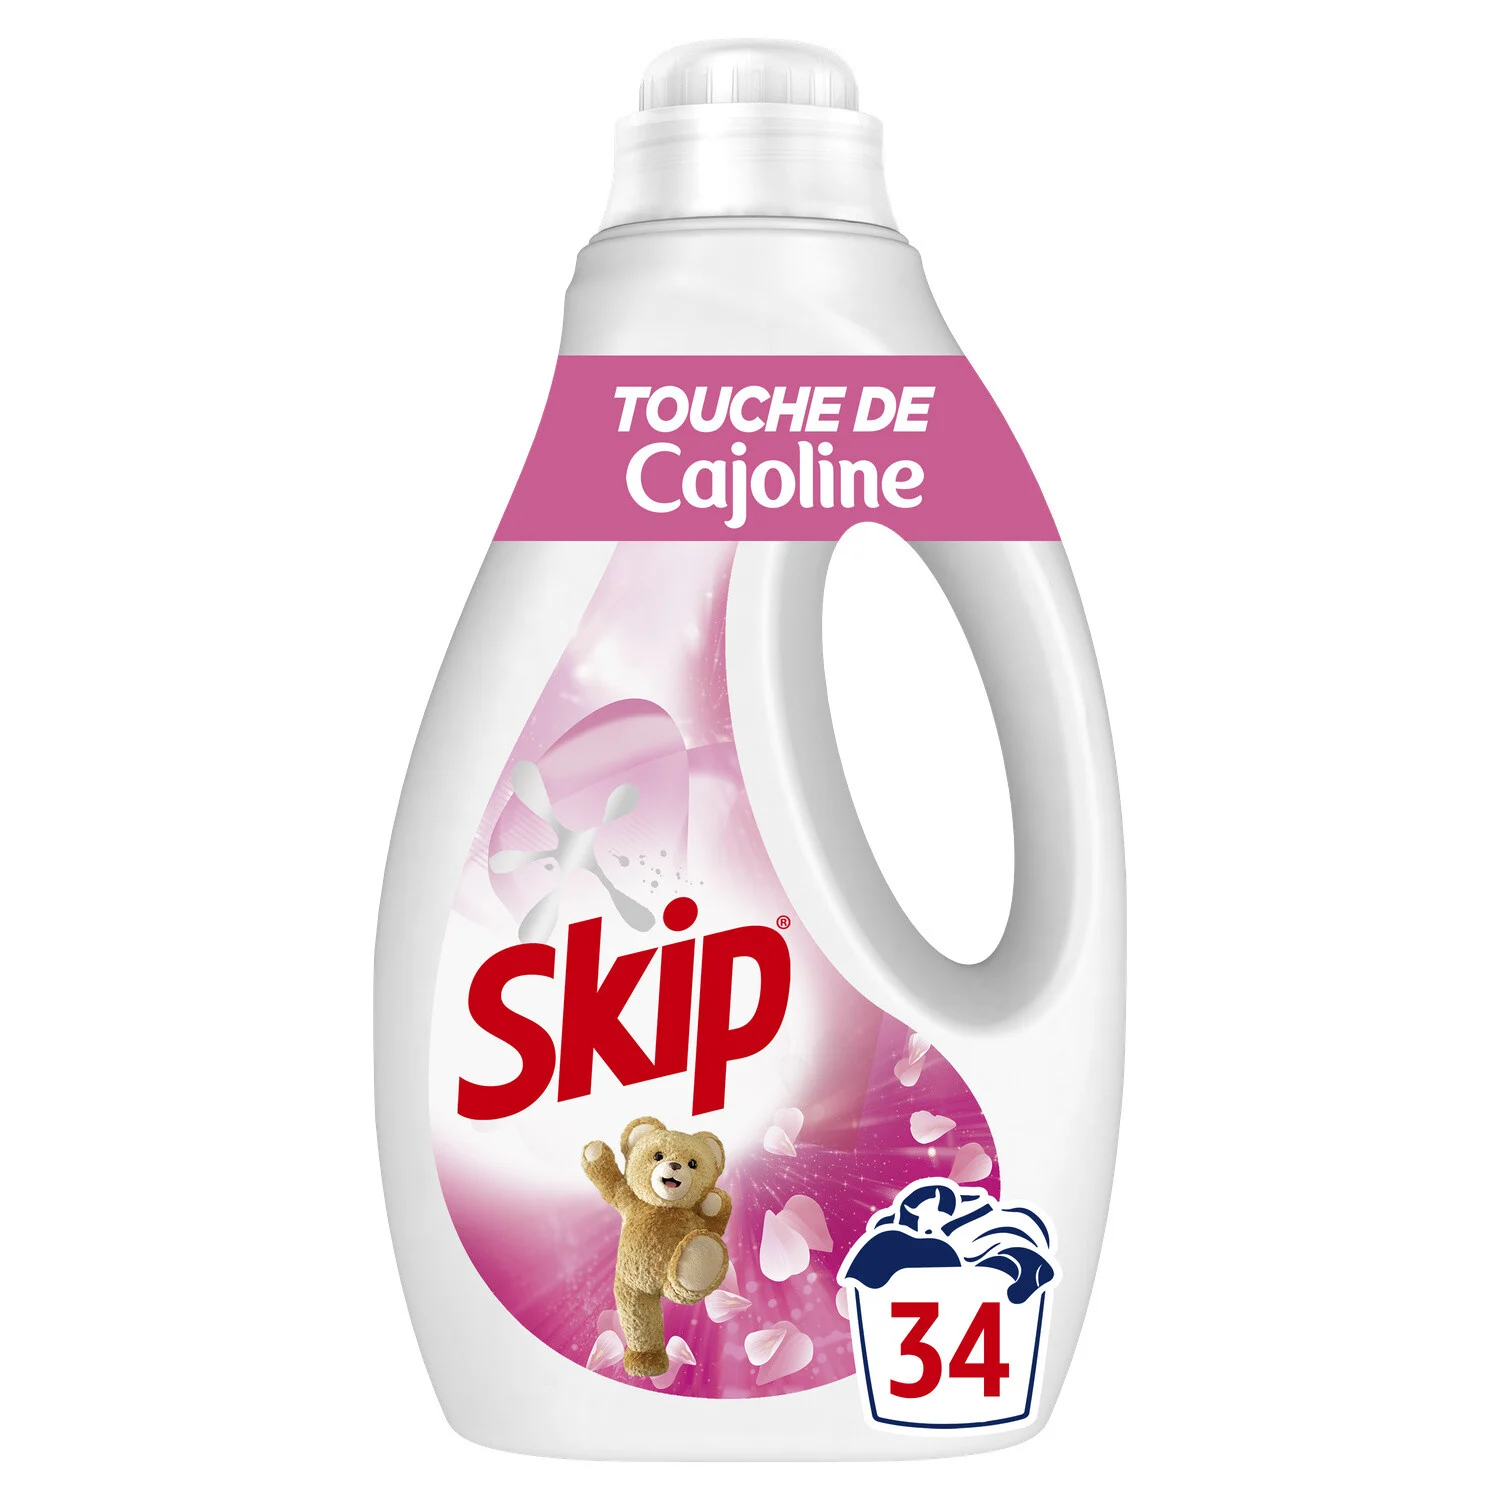 Skip Liq Cajoline 34w